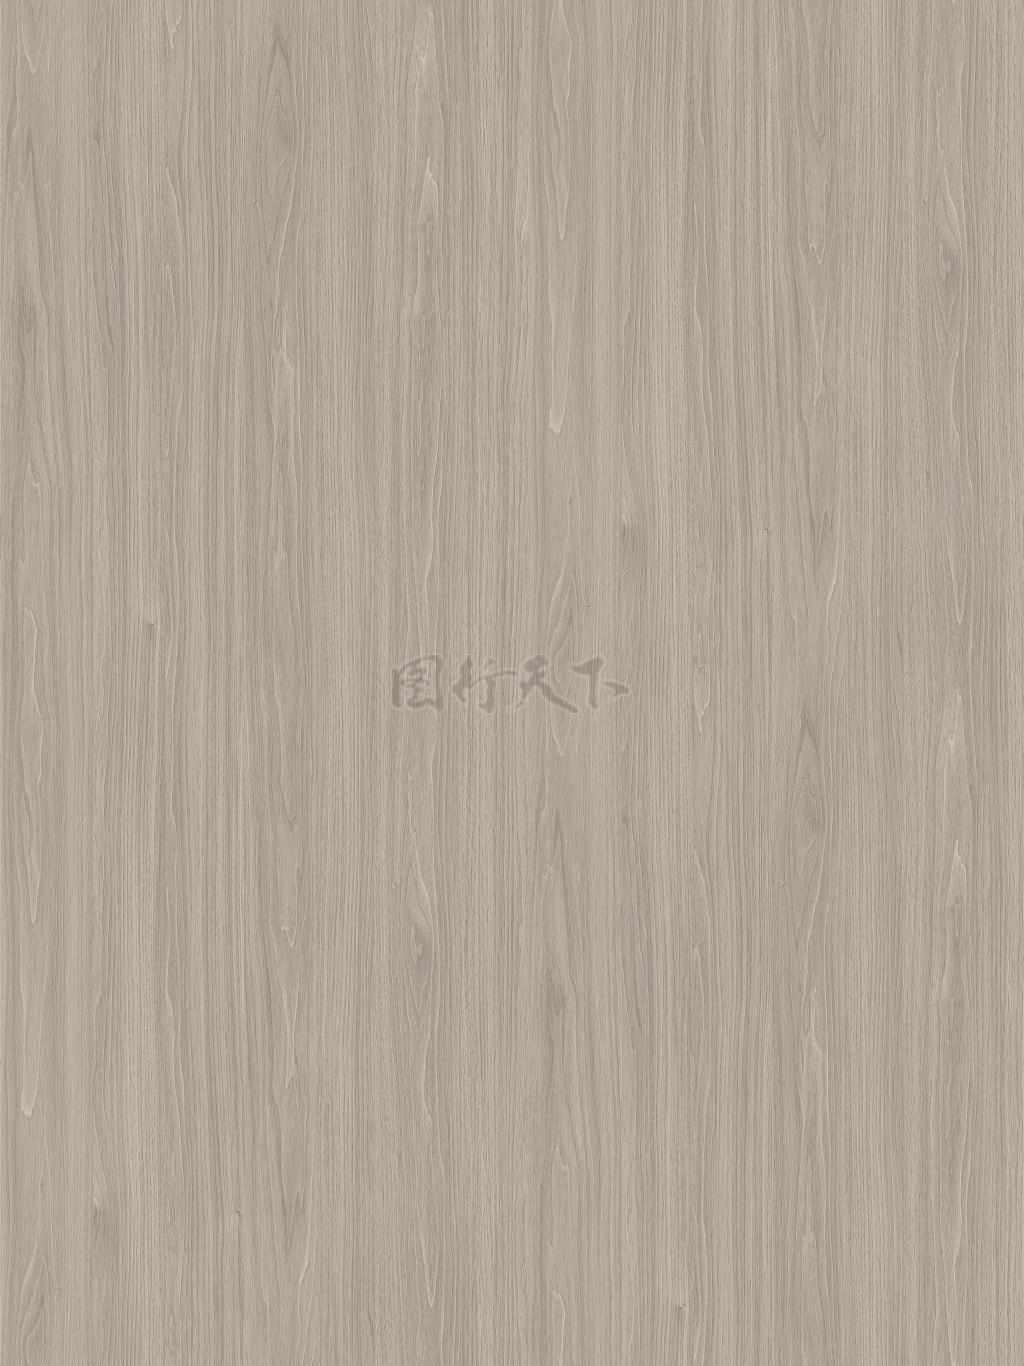  胡桃木木纹纹理背景图案贴图灰色